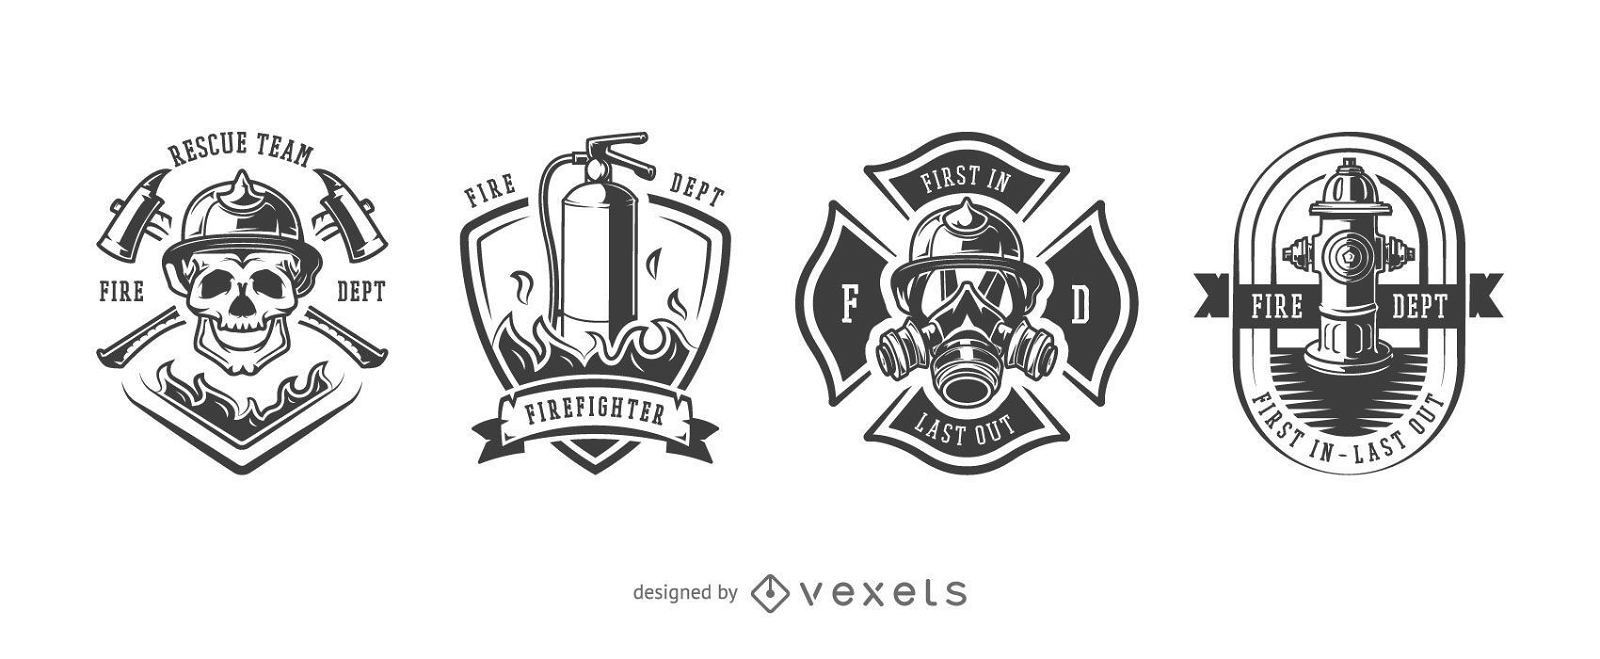 Vintage Firefighter Designs Set - Vector design 